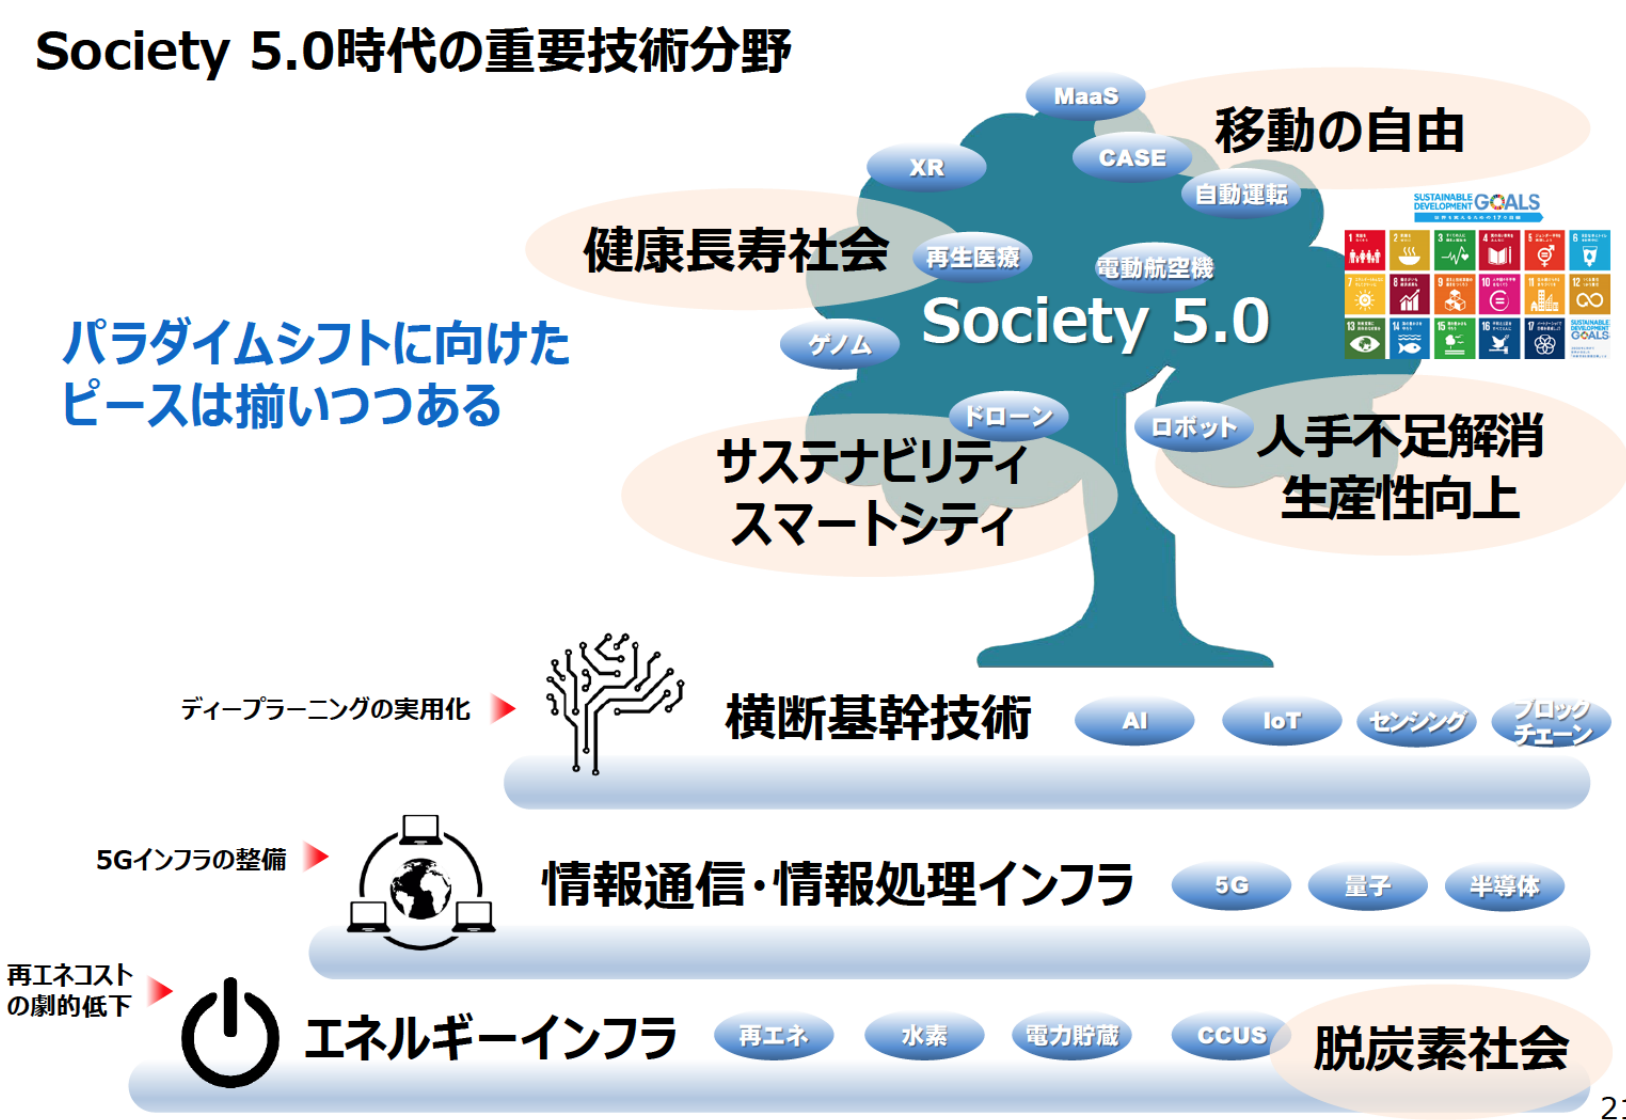 Общество 5 0. Японское общество 5.0. Society 5.0 Japan. Цифровизация в Японии график Society 5.0.